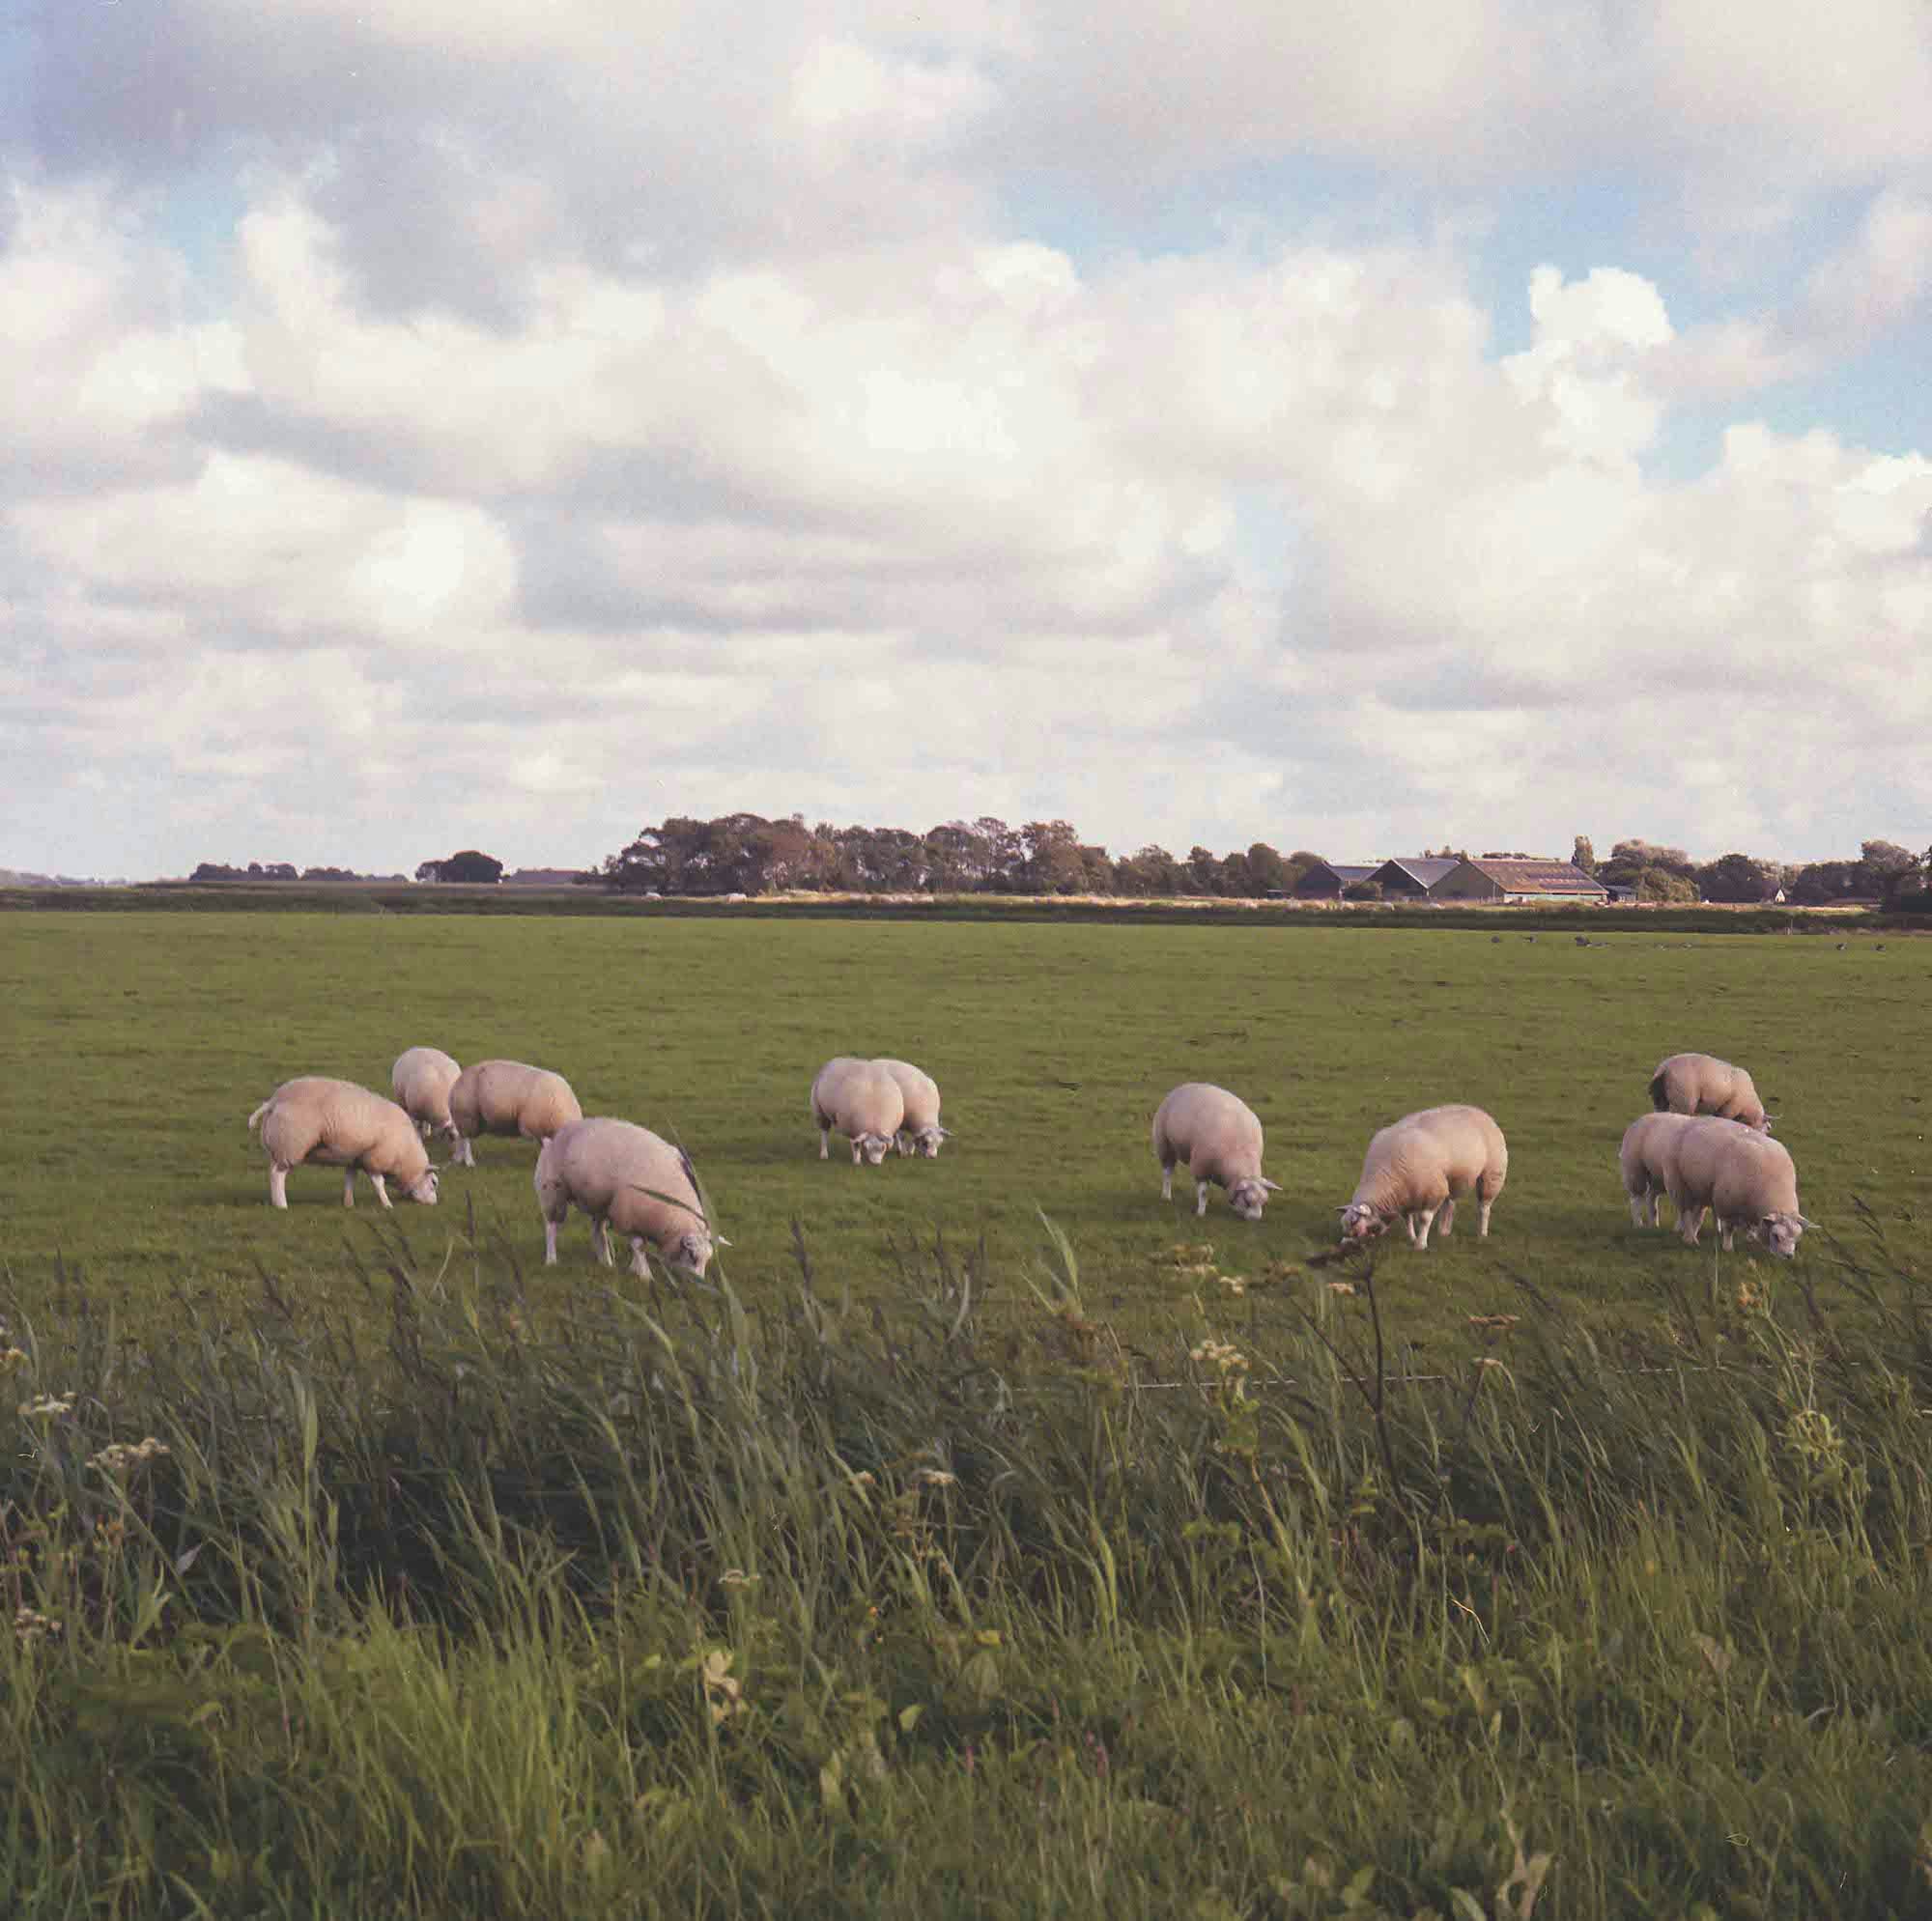 Image of sheep in Dutch landscape. © MAryam Touzani